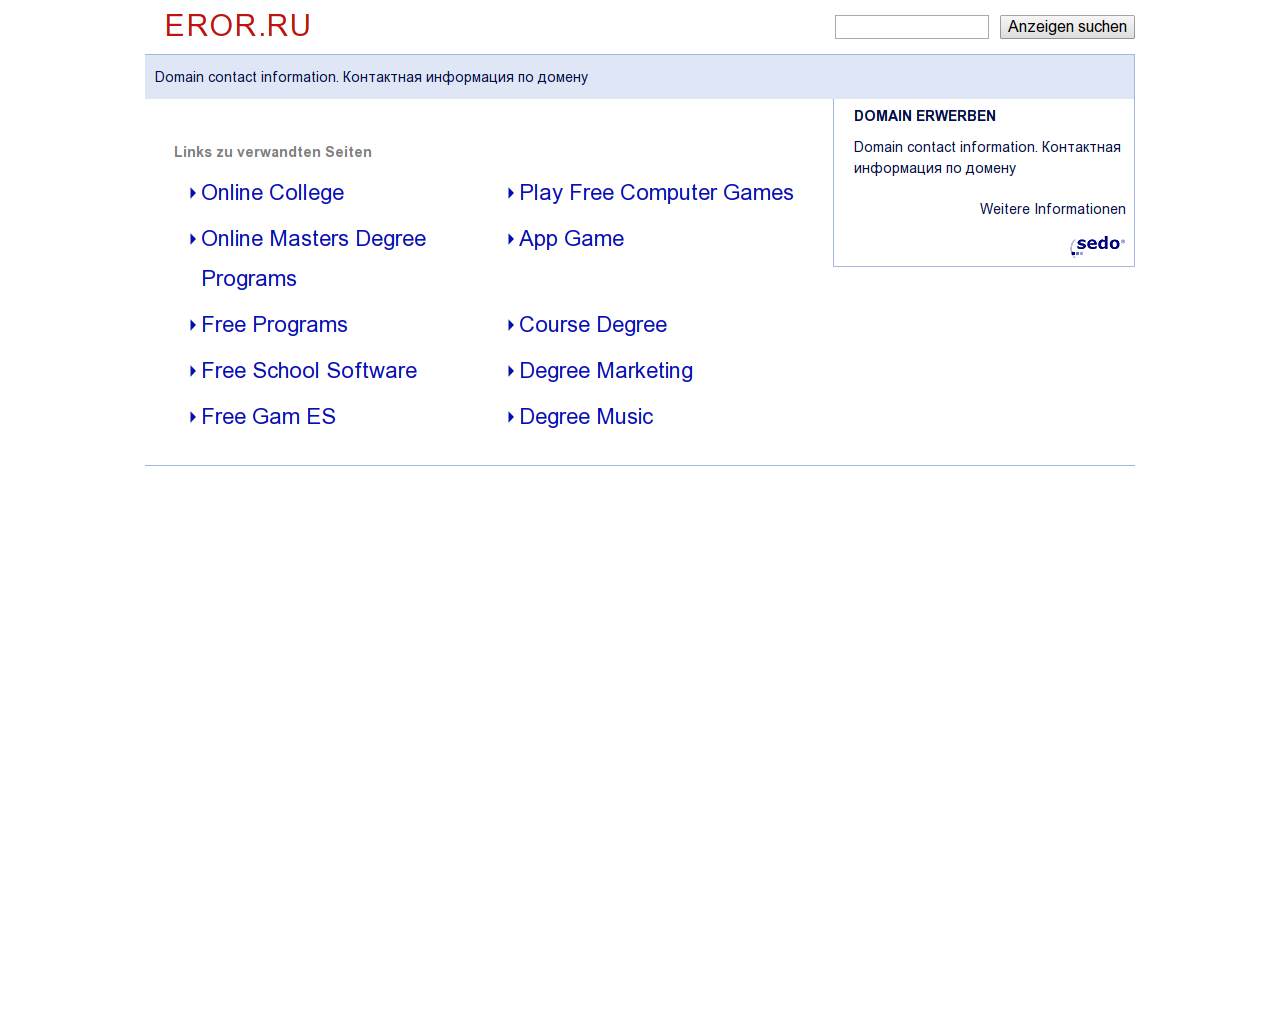 Изображение сайта eror.ru в разрешении 1280x1024